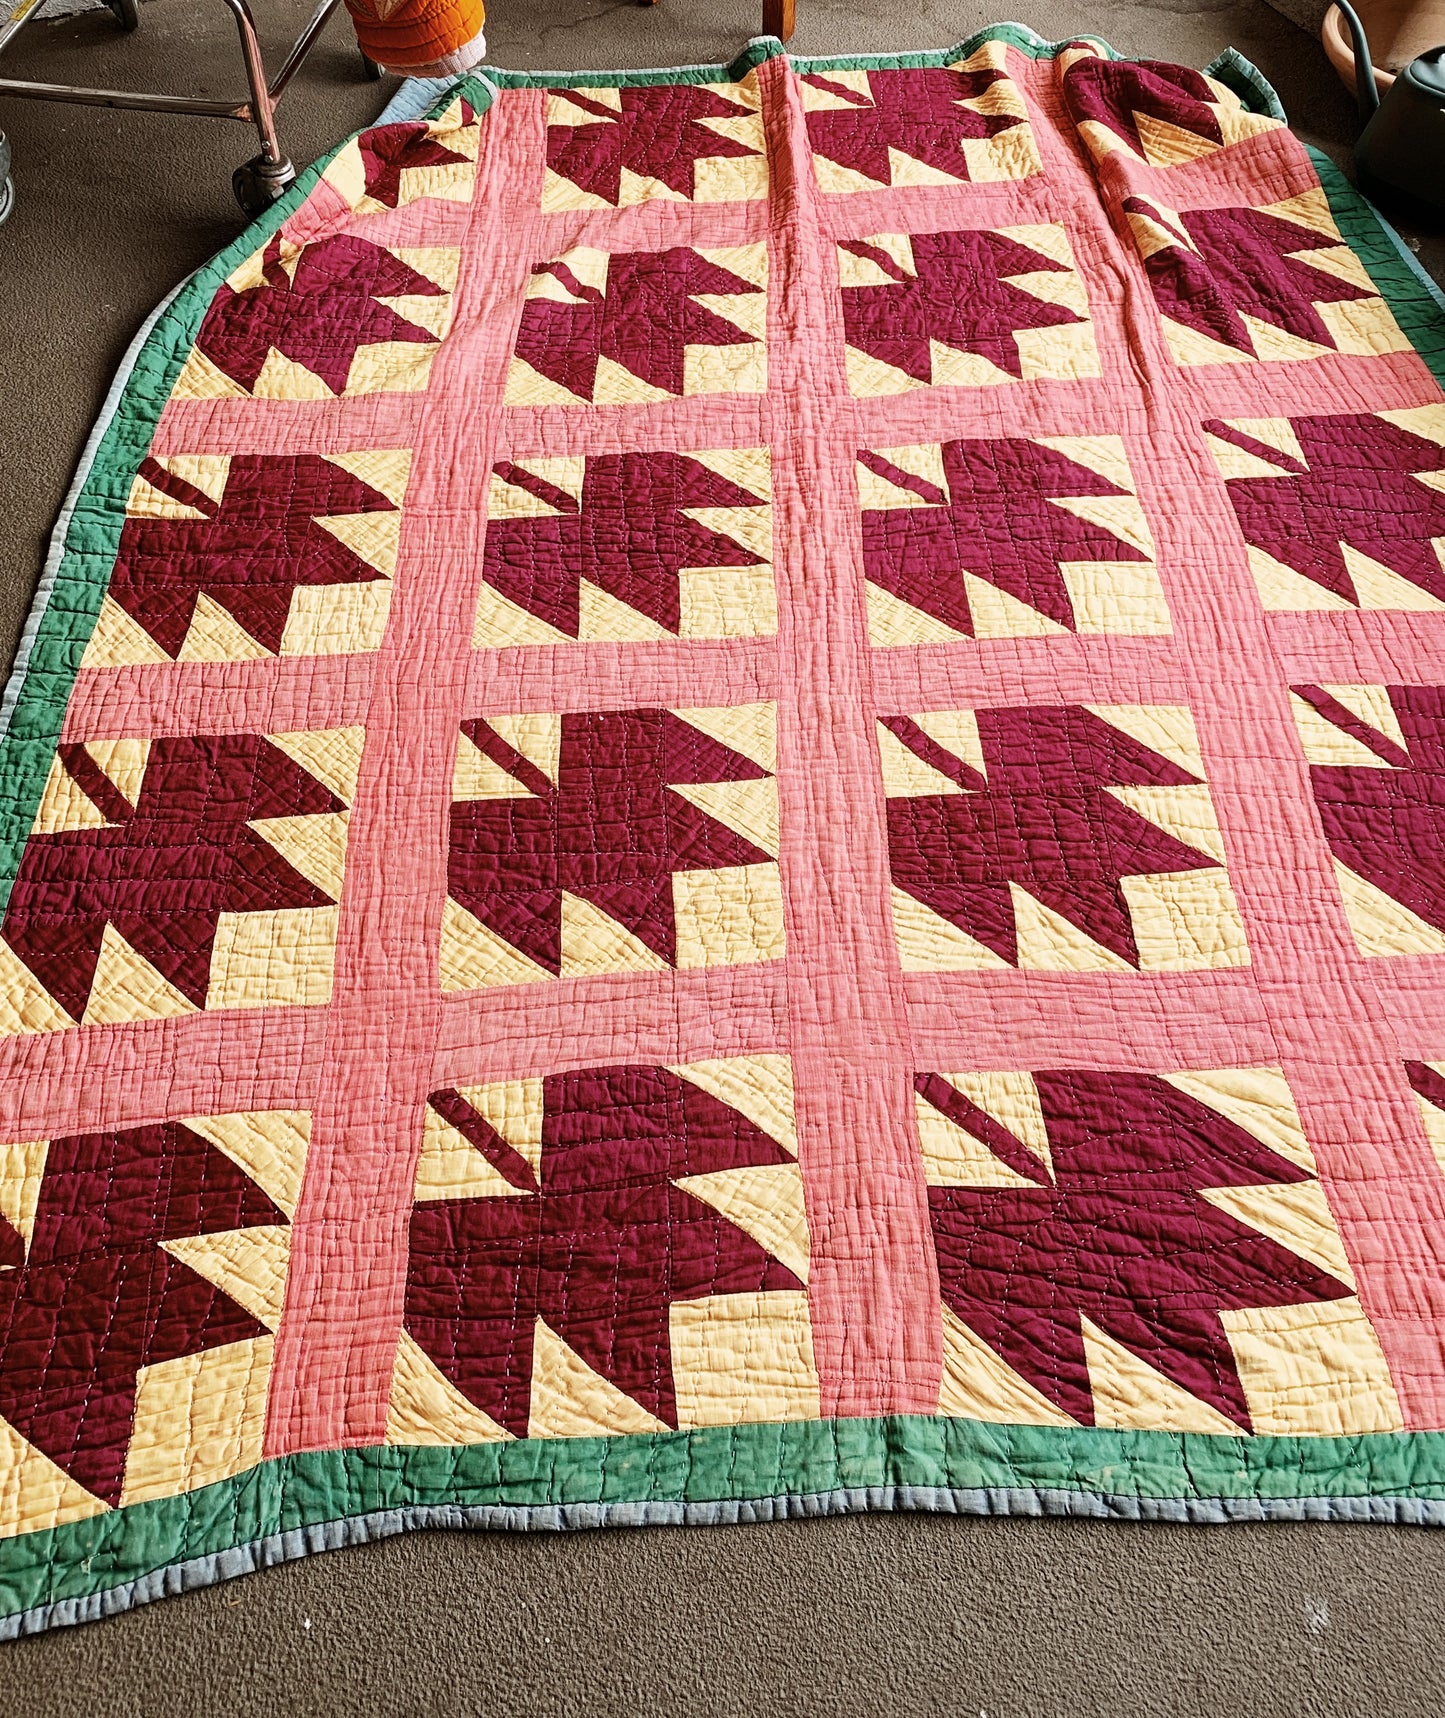 Antique Maple Leaf Pattern Cotton Quilt